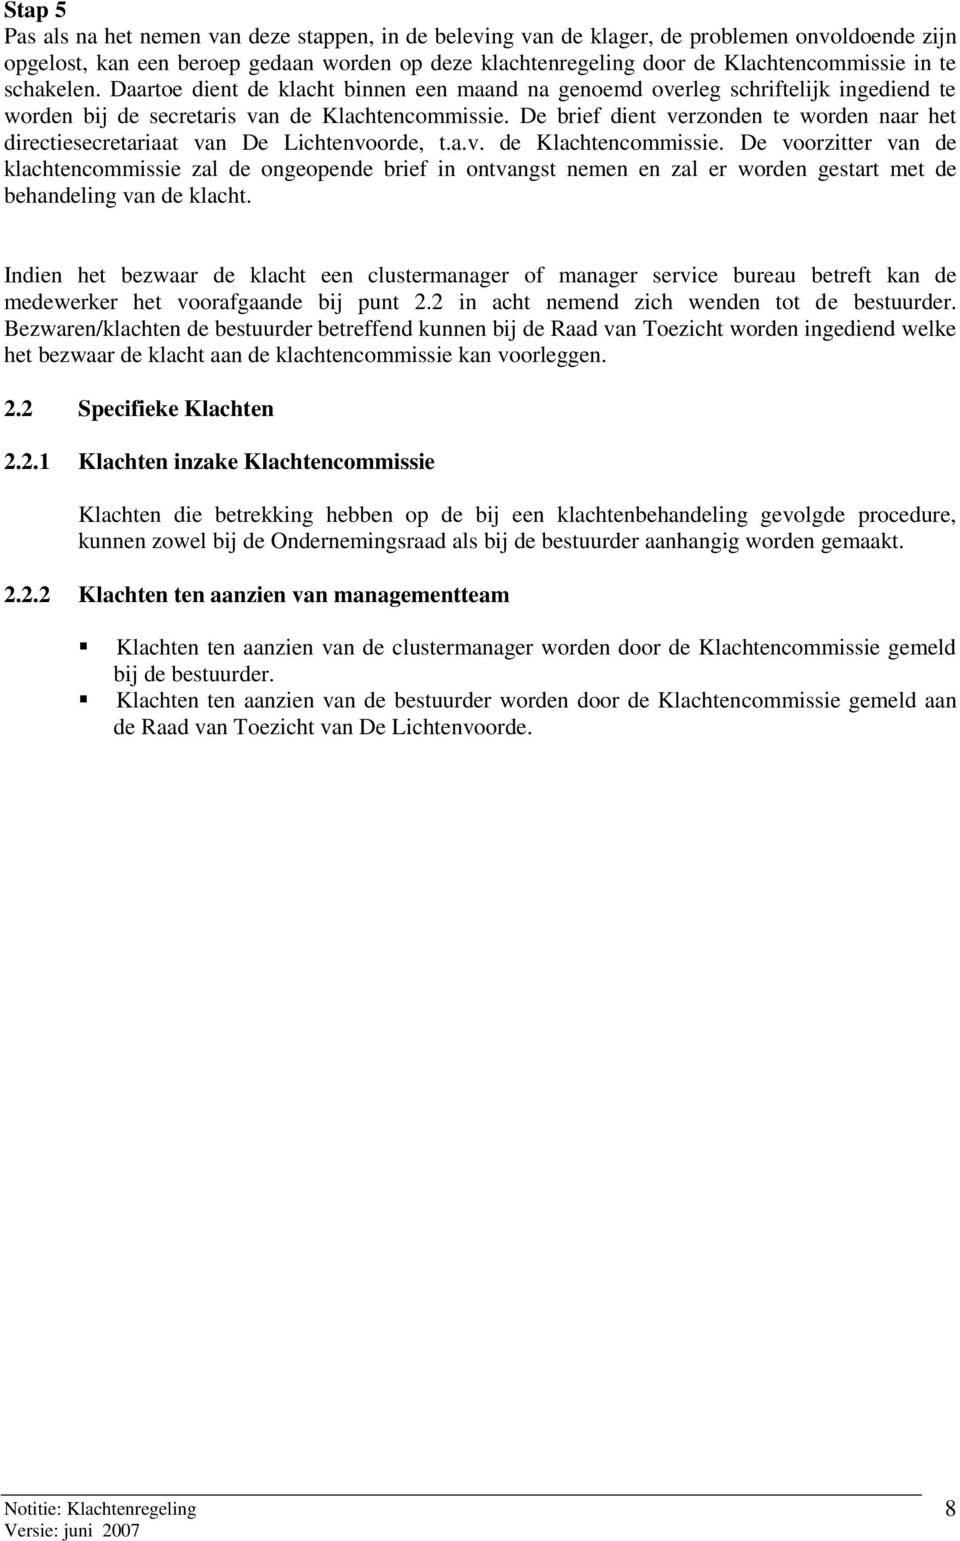 De brief dient verzonden te worden naar het directiesecretariaat van De Lichtenvoorde, t.a.v. de Klachtencommissie.